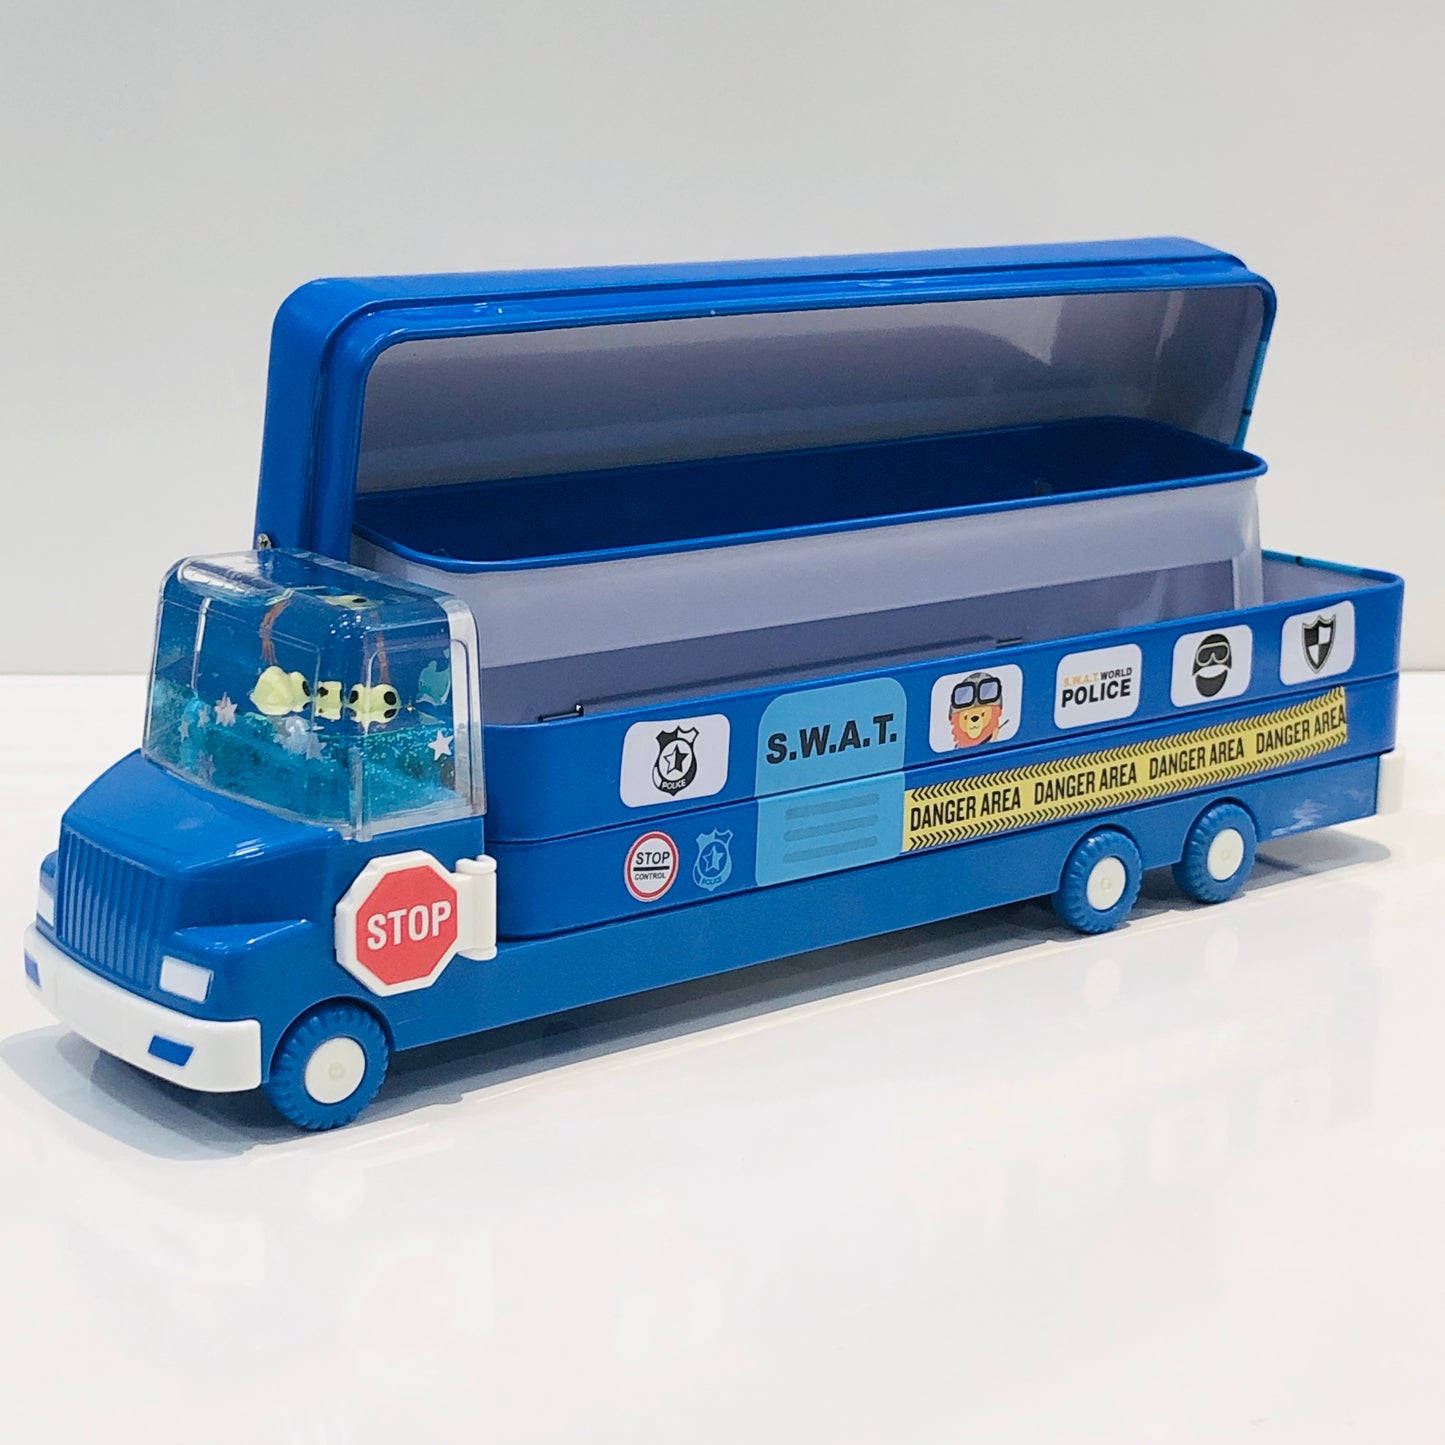 Police-Ice cream Bus Watery Glitter Pencil Box